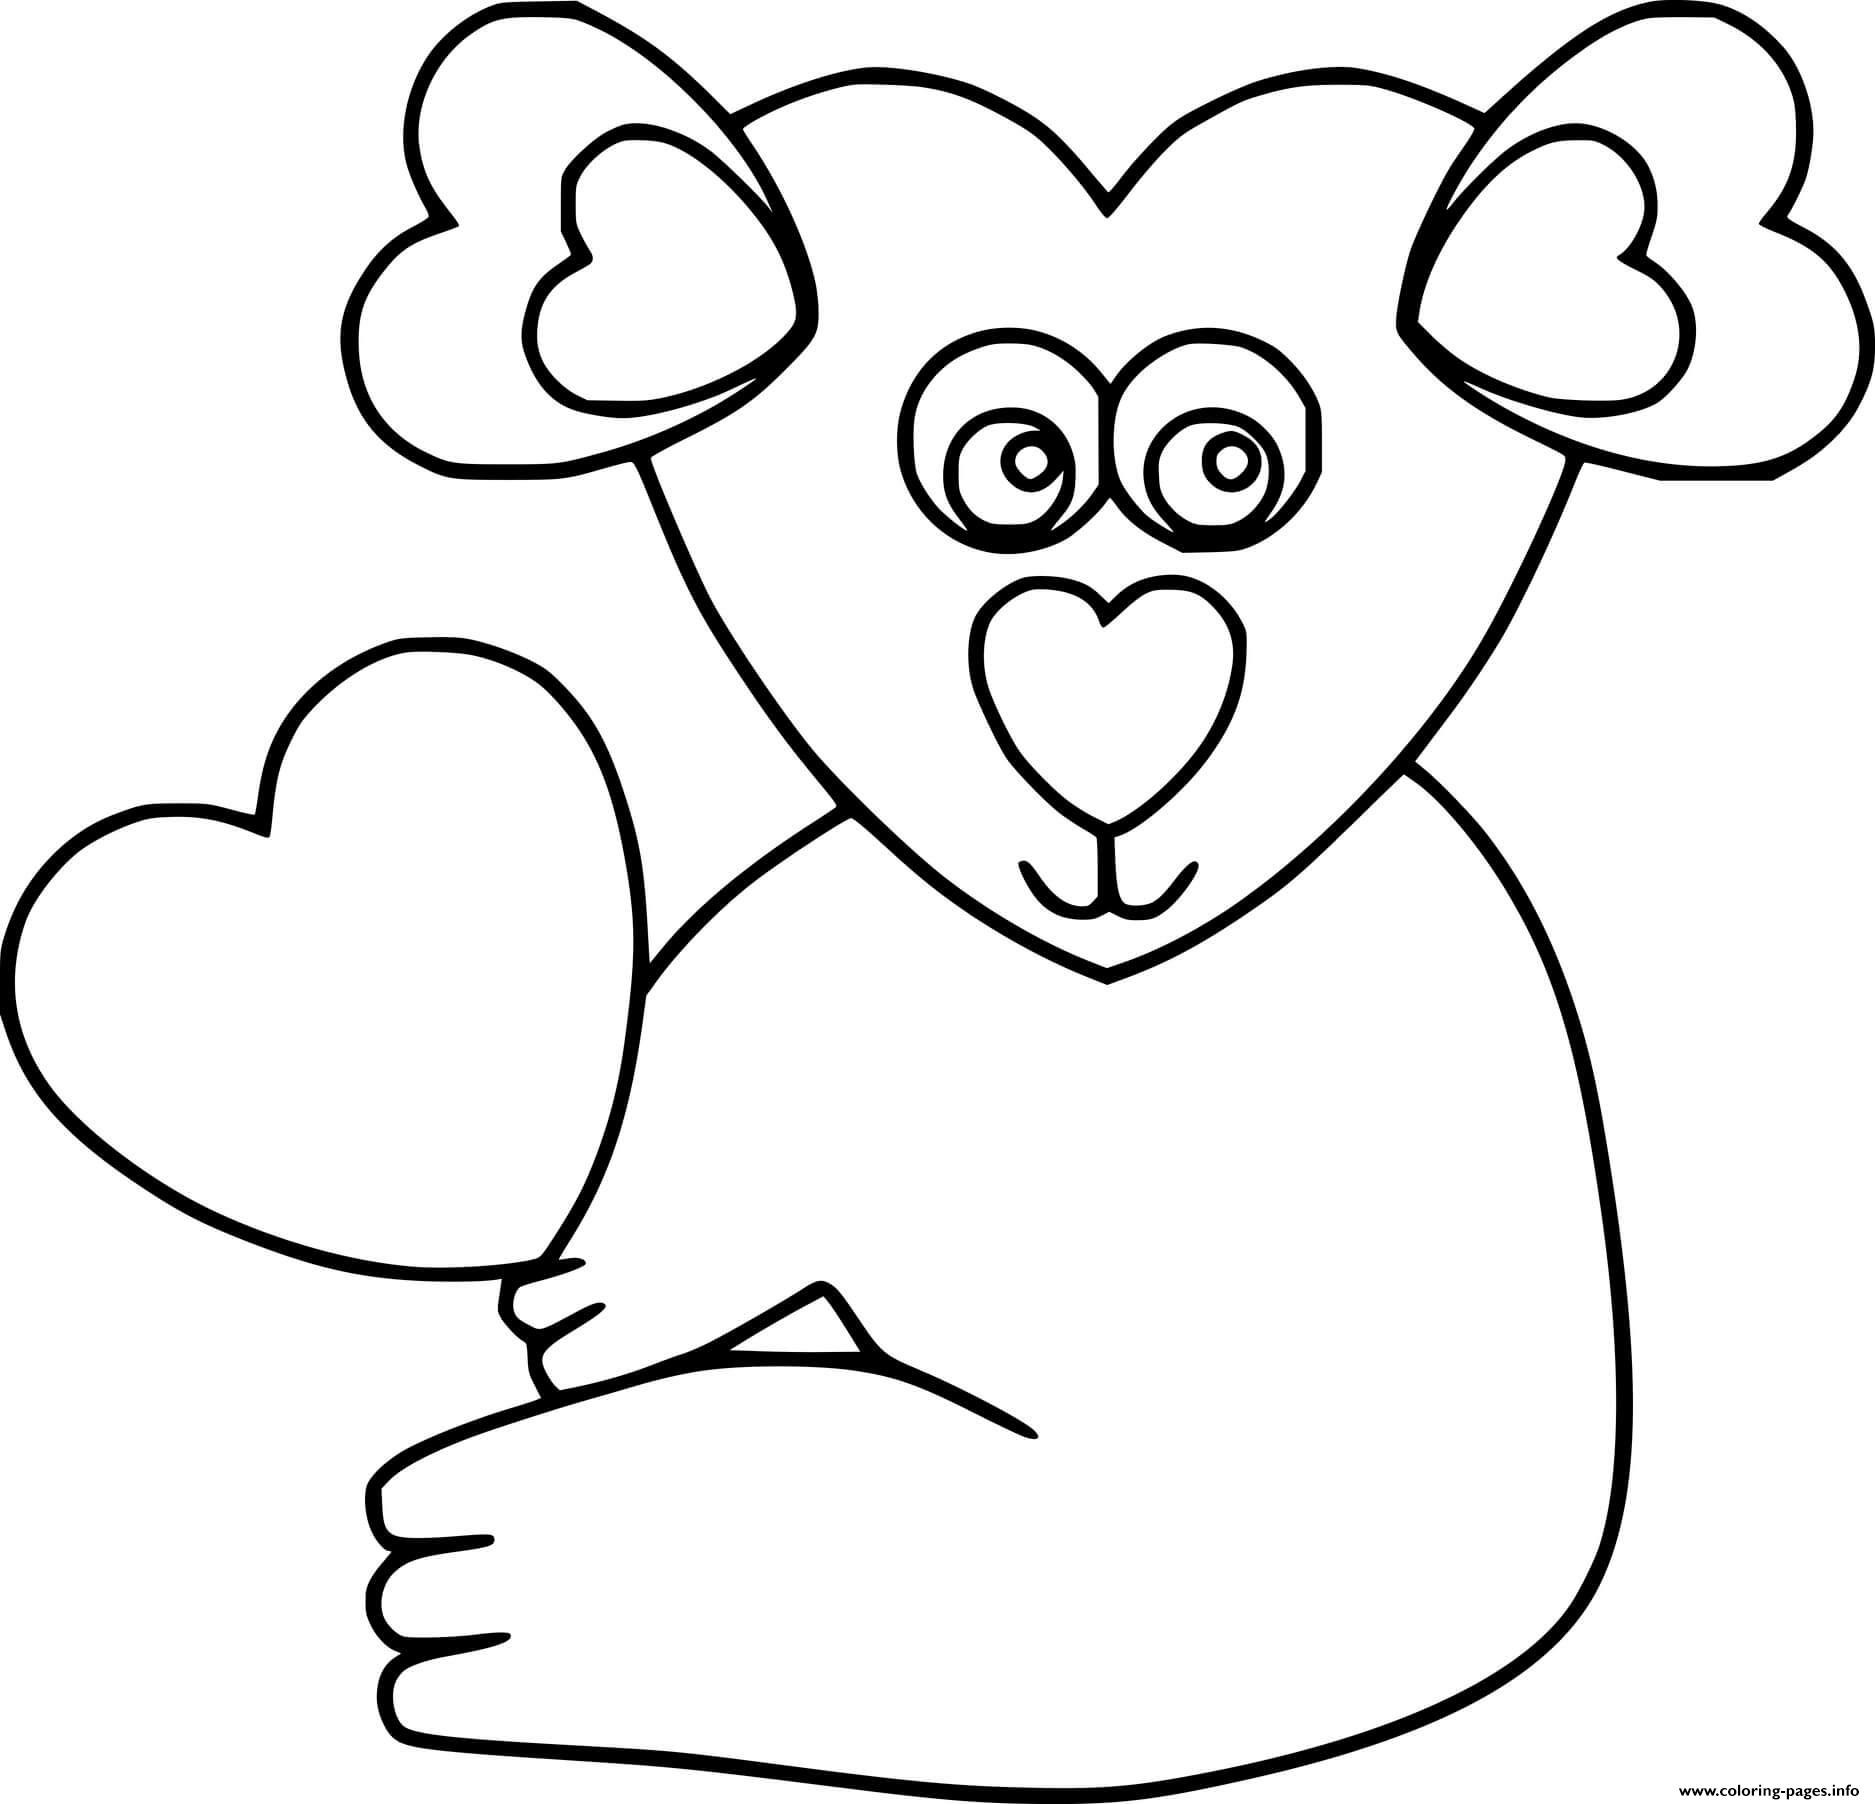 Heart Shaped Koala coloring